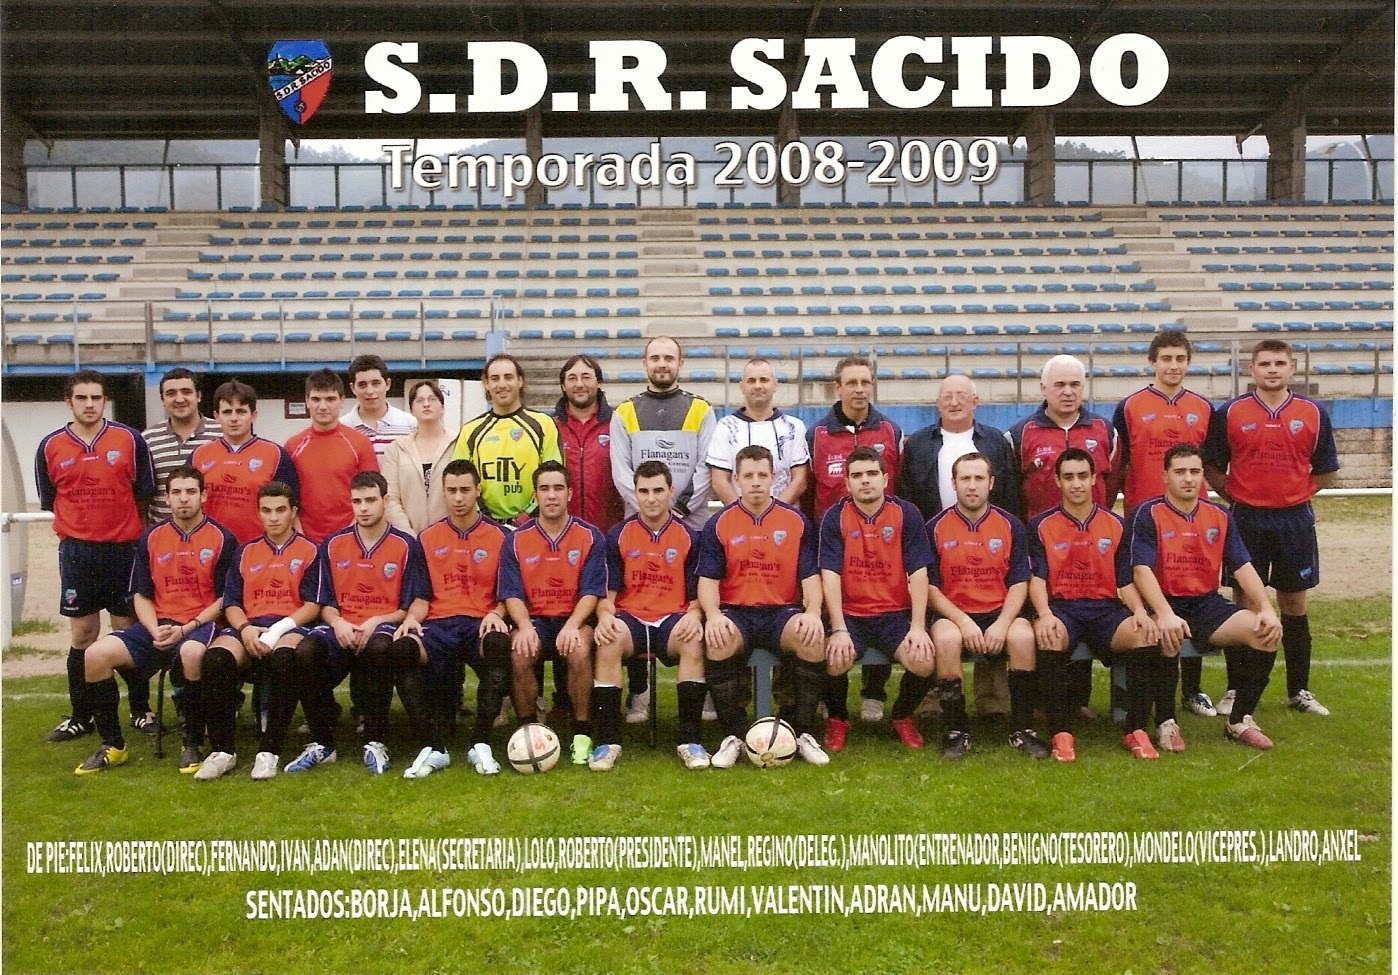 SDR SACIDO 2008/2009